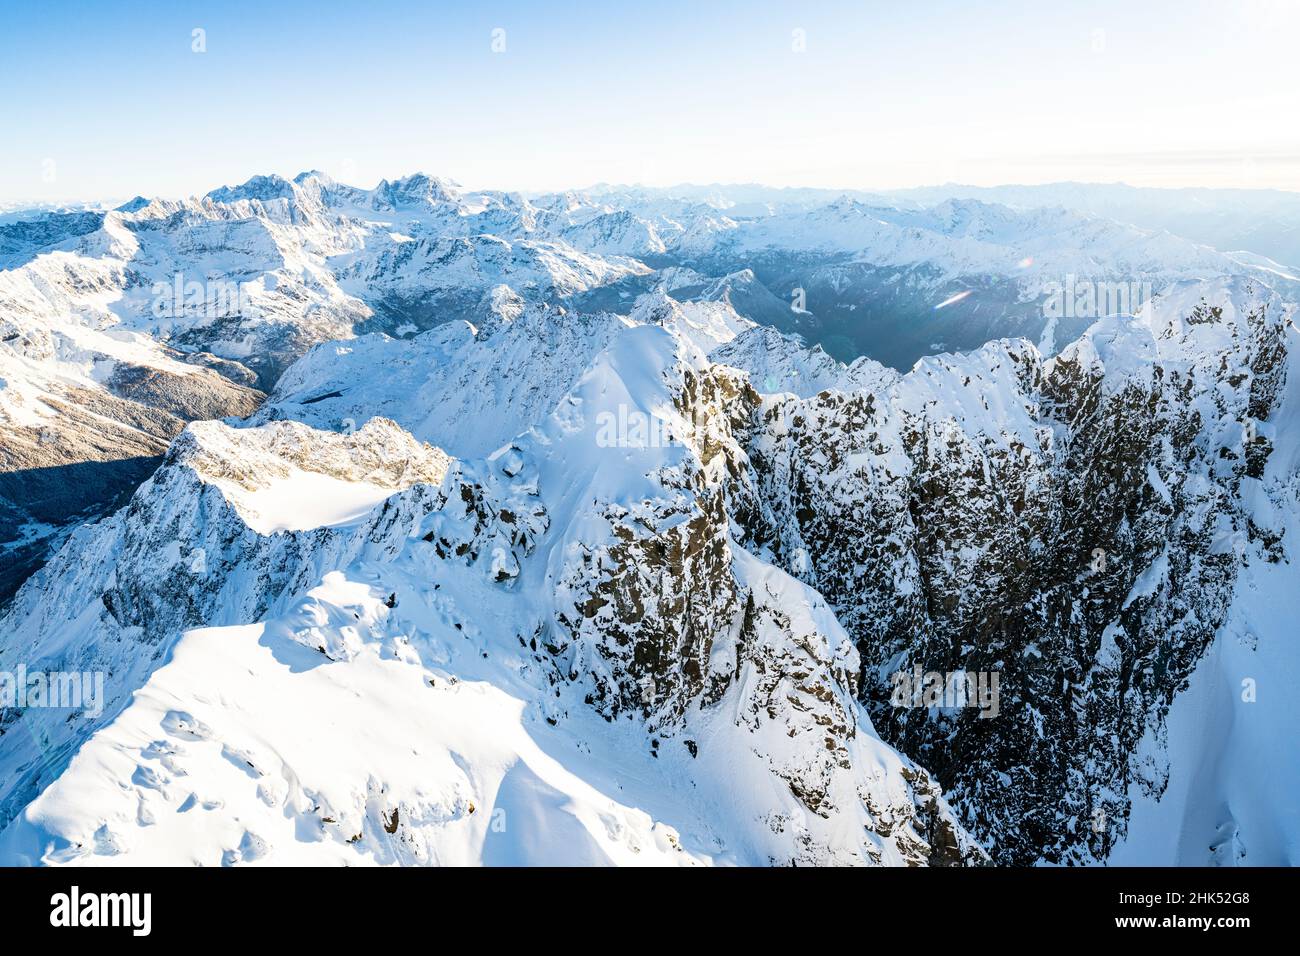 Alba invernale sul Monte Disgrazia innevato, vista aerea, Valmalenco, provincia di Sondrio, Valtellina, Lombardia, Italia, Europa Foto Stock